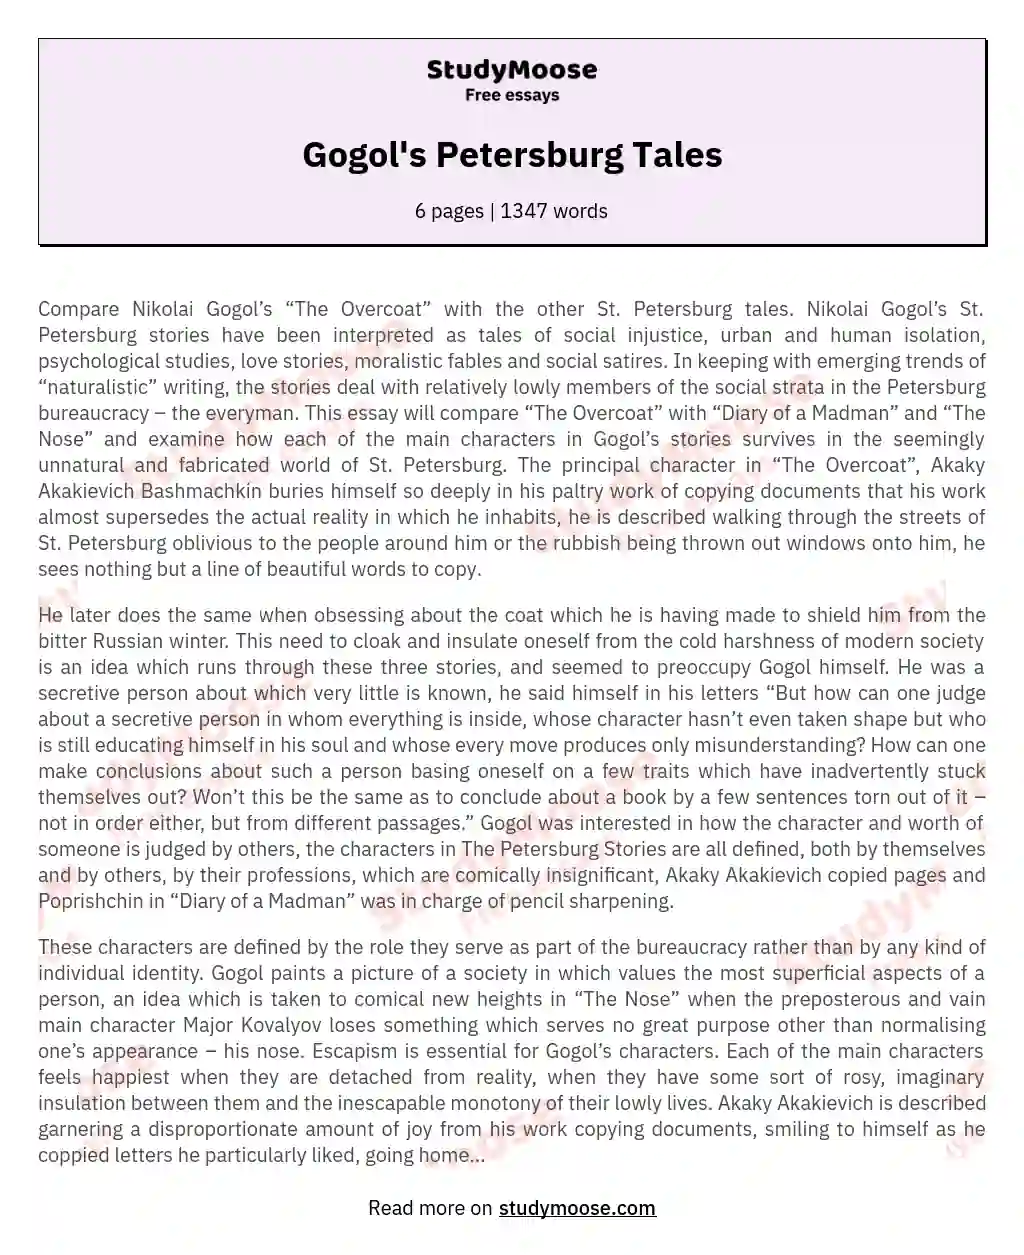 Gogol's Petersburg Tales essay